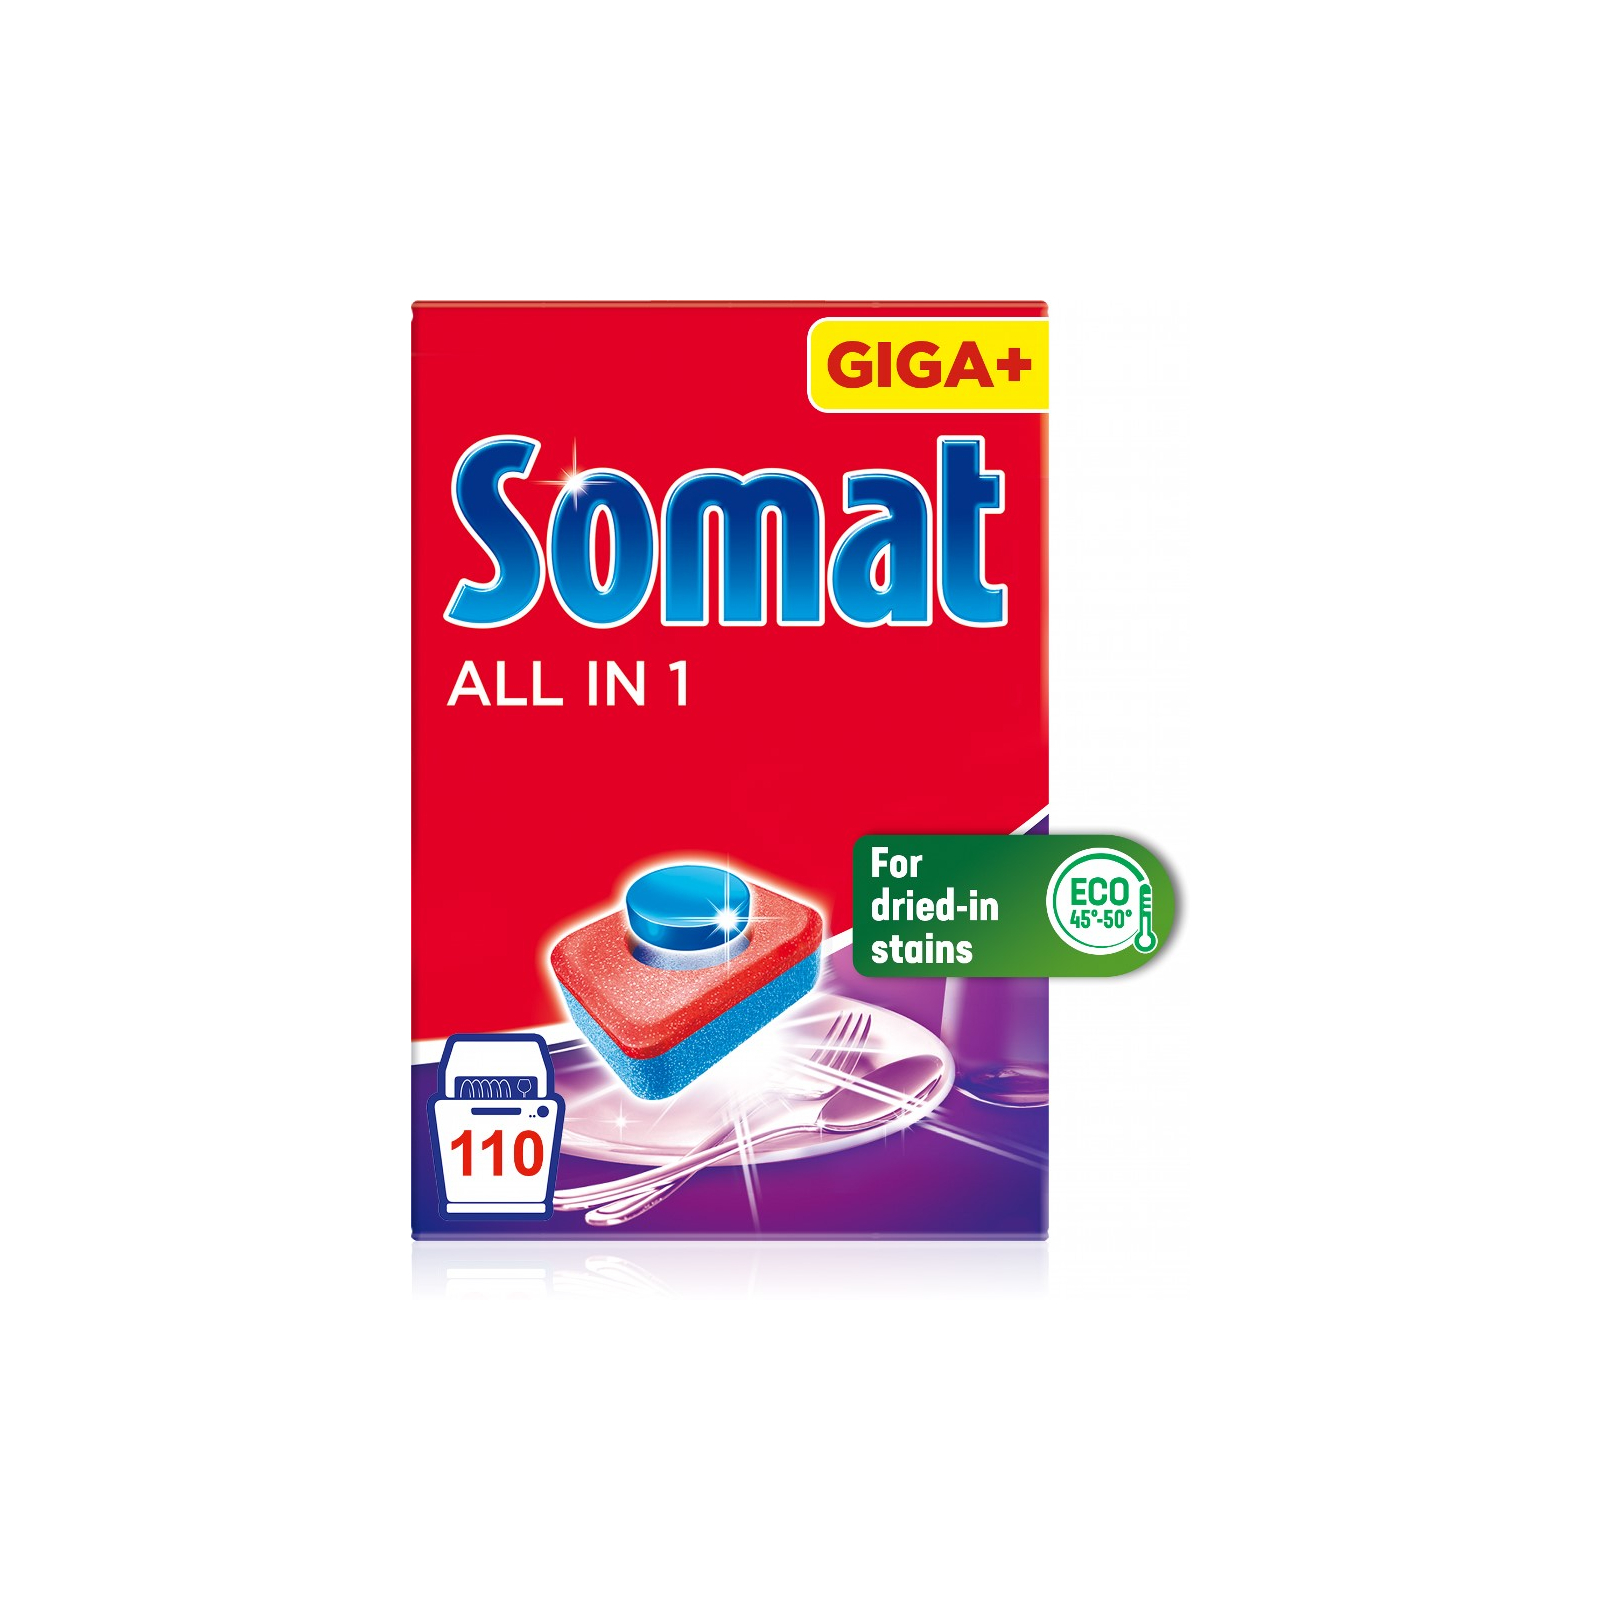 Таблетки для посудомоечных машин Somat All in 1 90+90 шт. (9000101536232) изображение 3